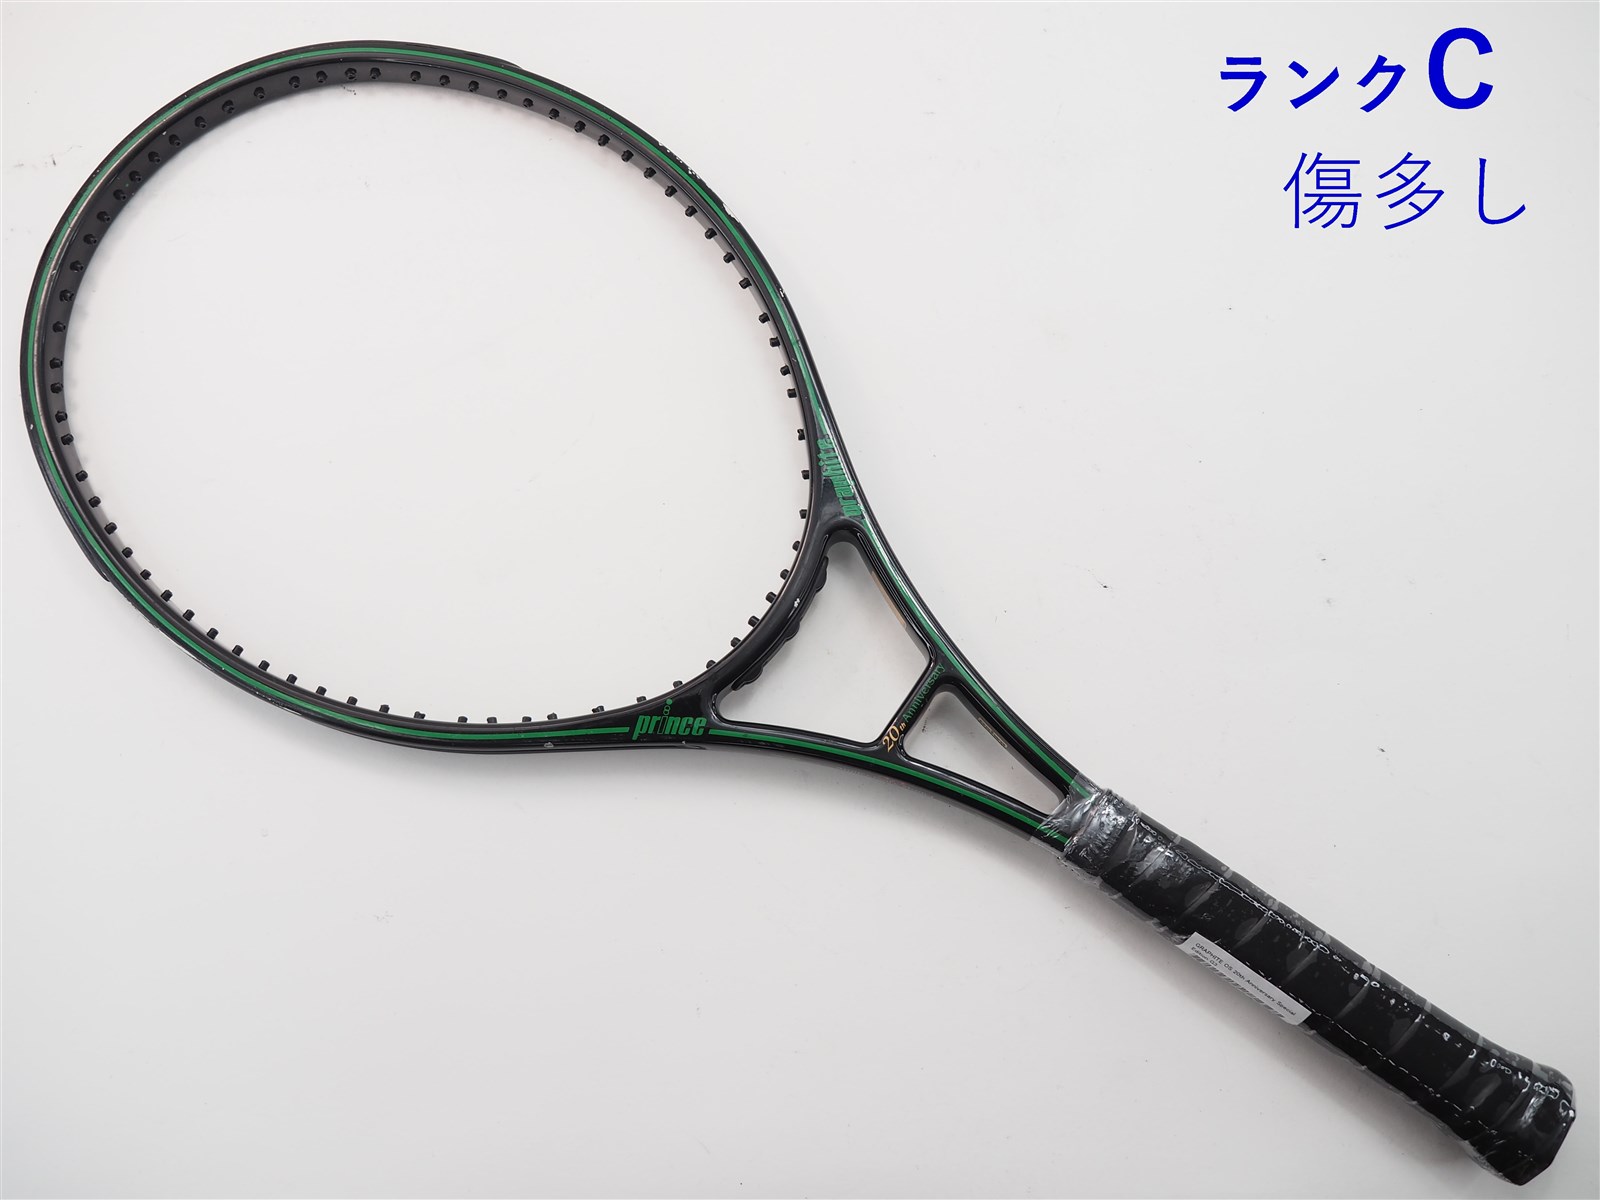 テニスラケット プリンス グラファイト OS 4本ライン【台湾製】 (G4)PRINCE GRAPHITE OS